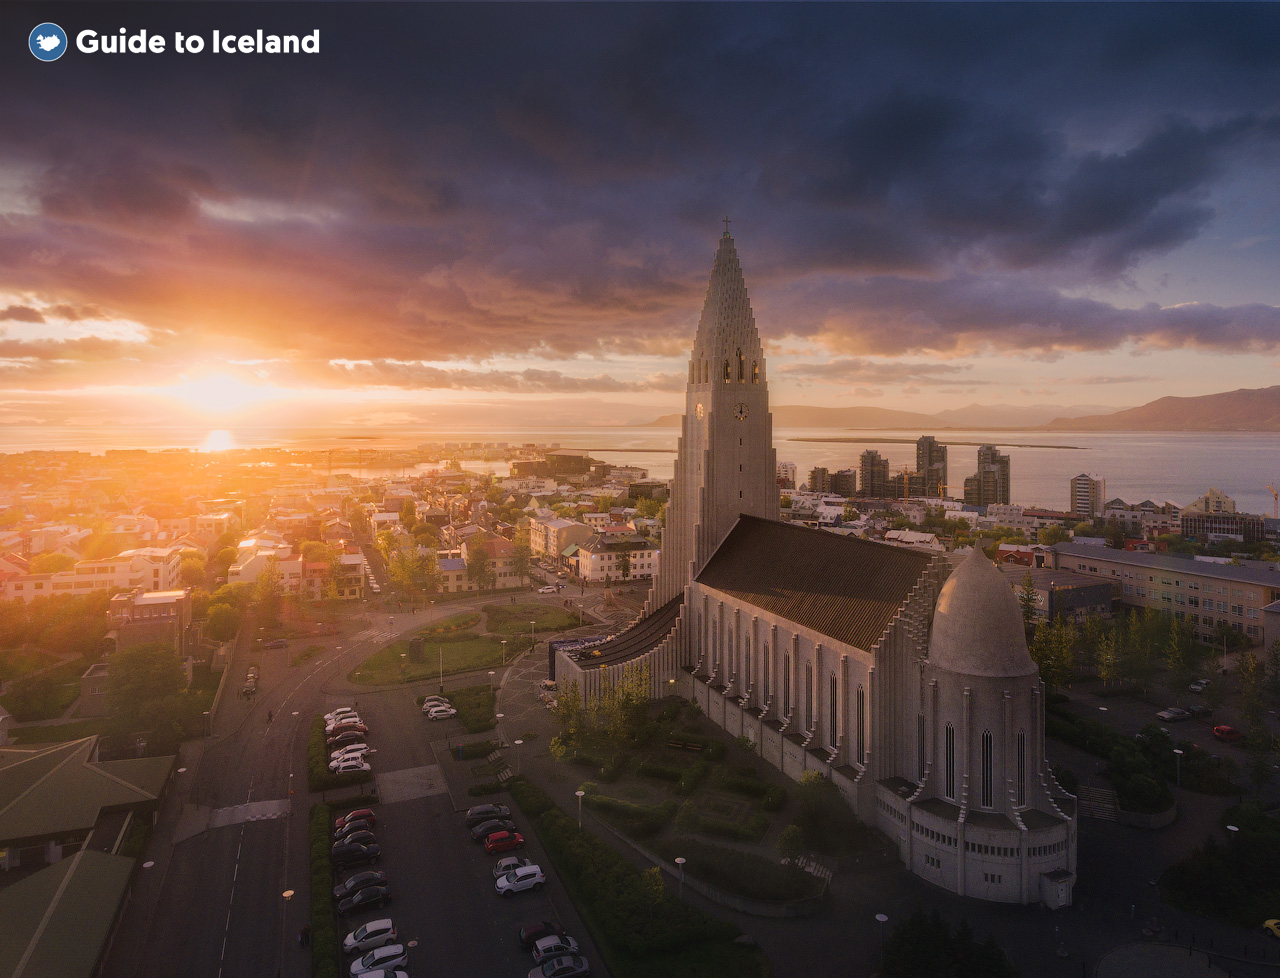 アイスランドの首都となるレイキャビクではカラフルな建物が沢山ある